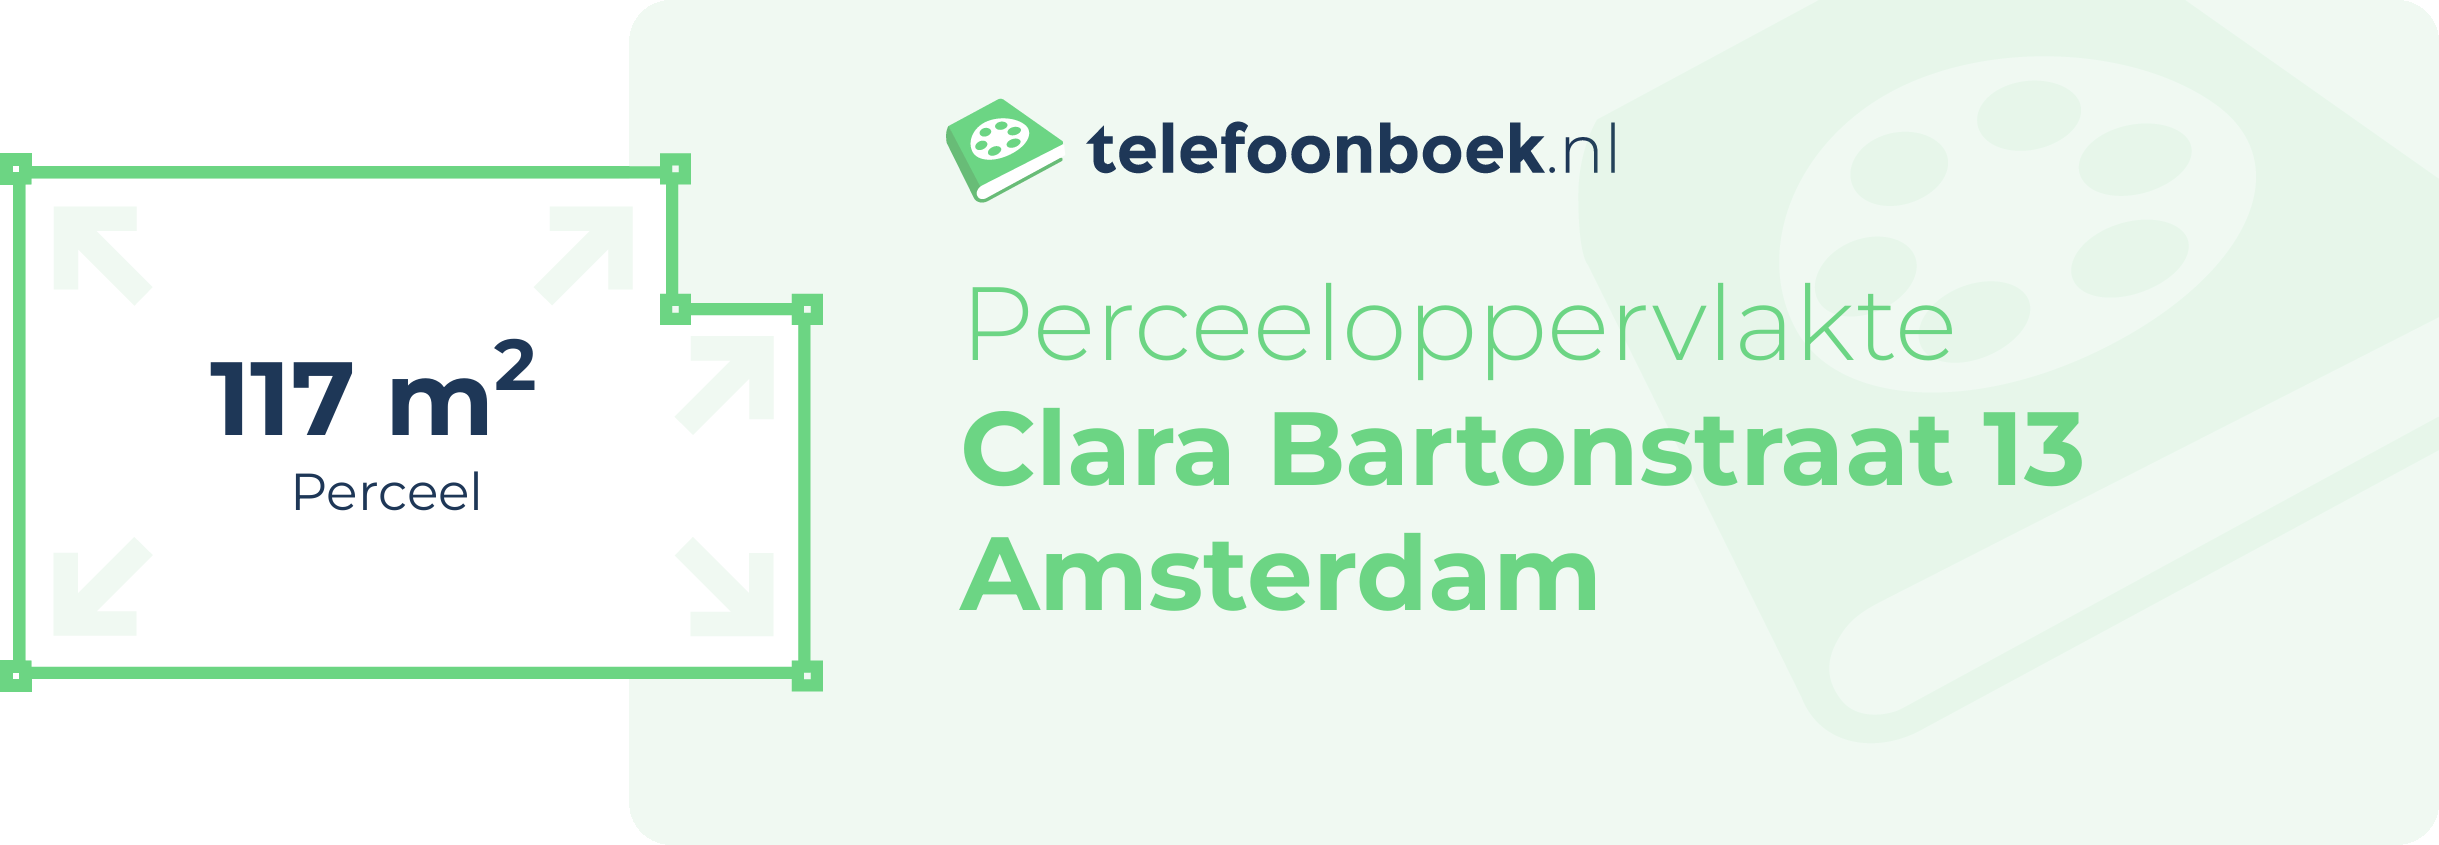 Perceeloppervlakte Clara Bartonstraat 13 Amsterdam